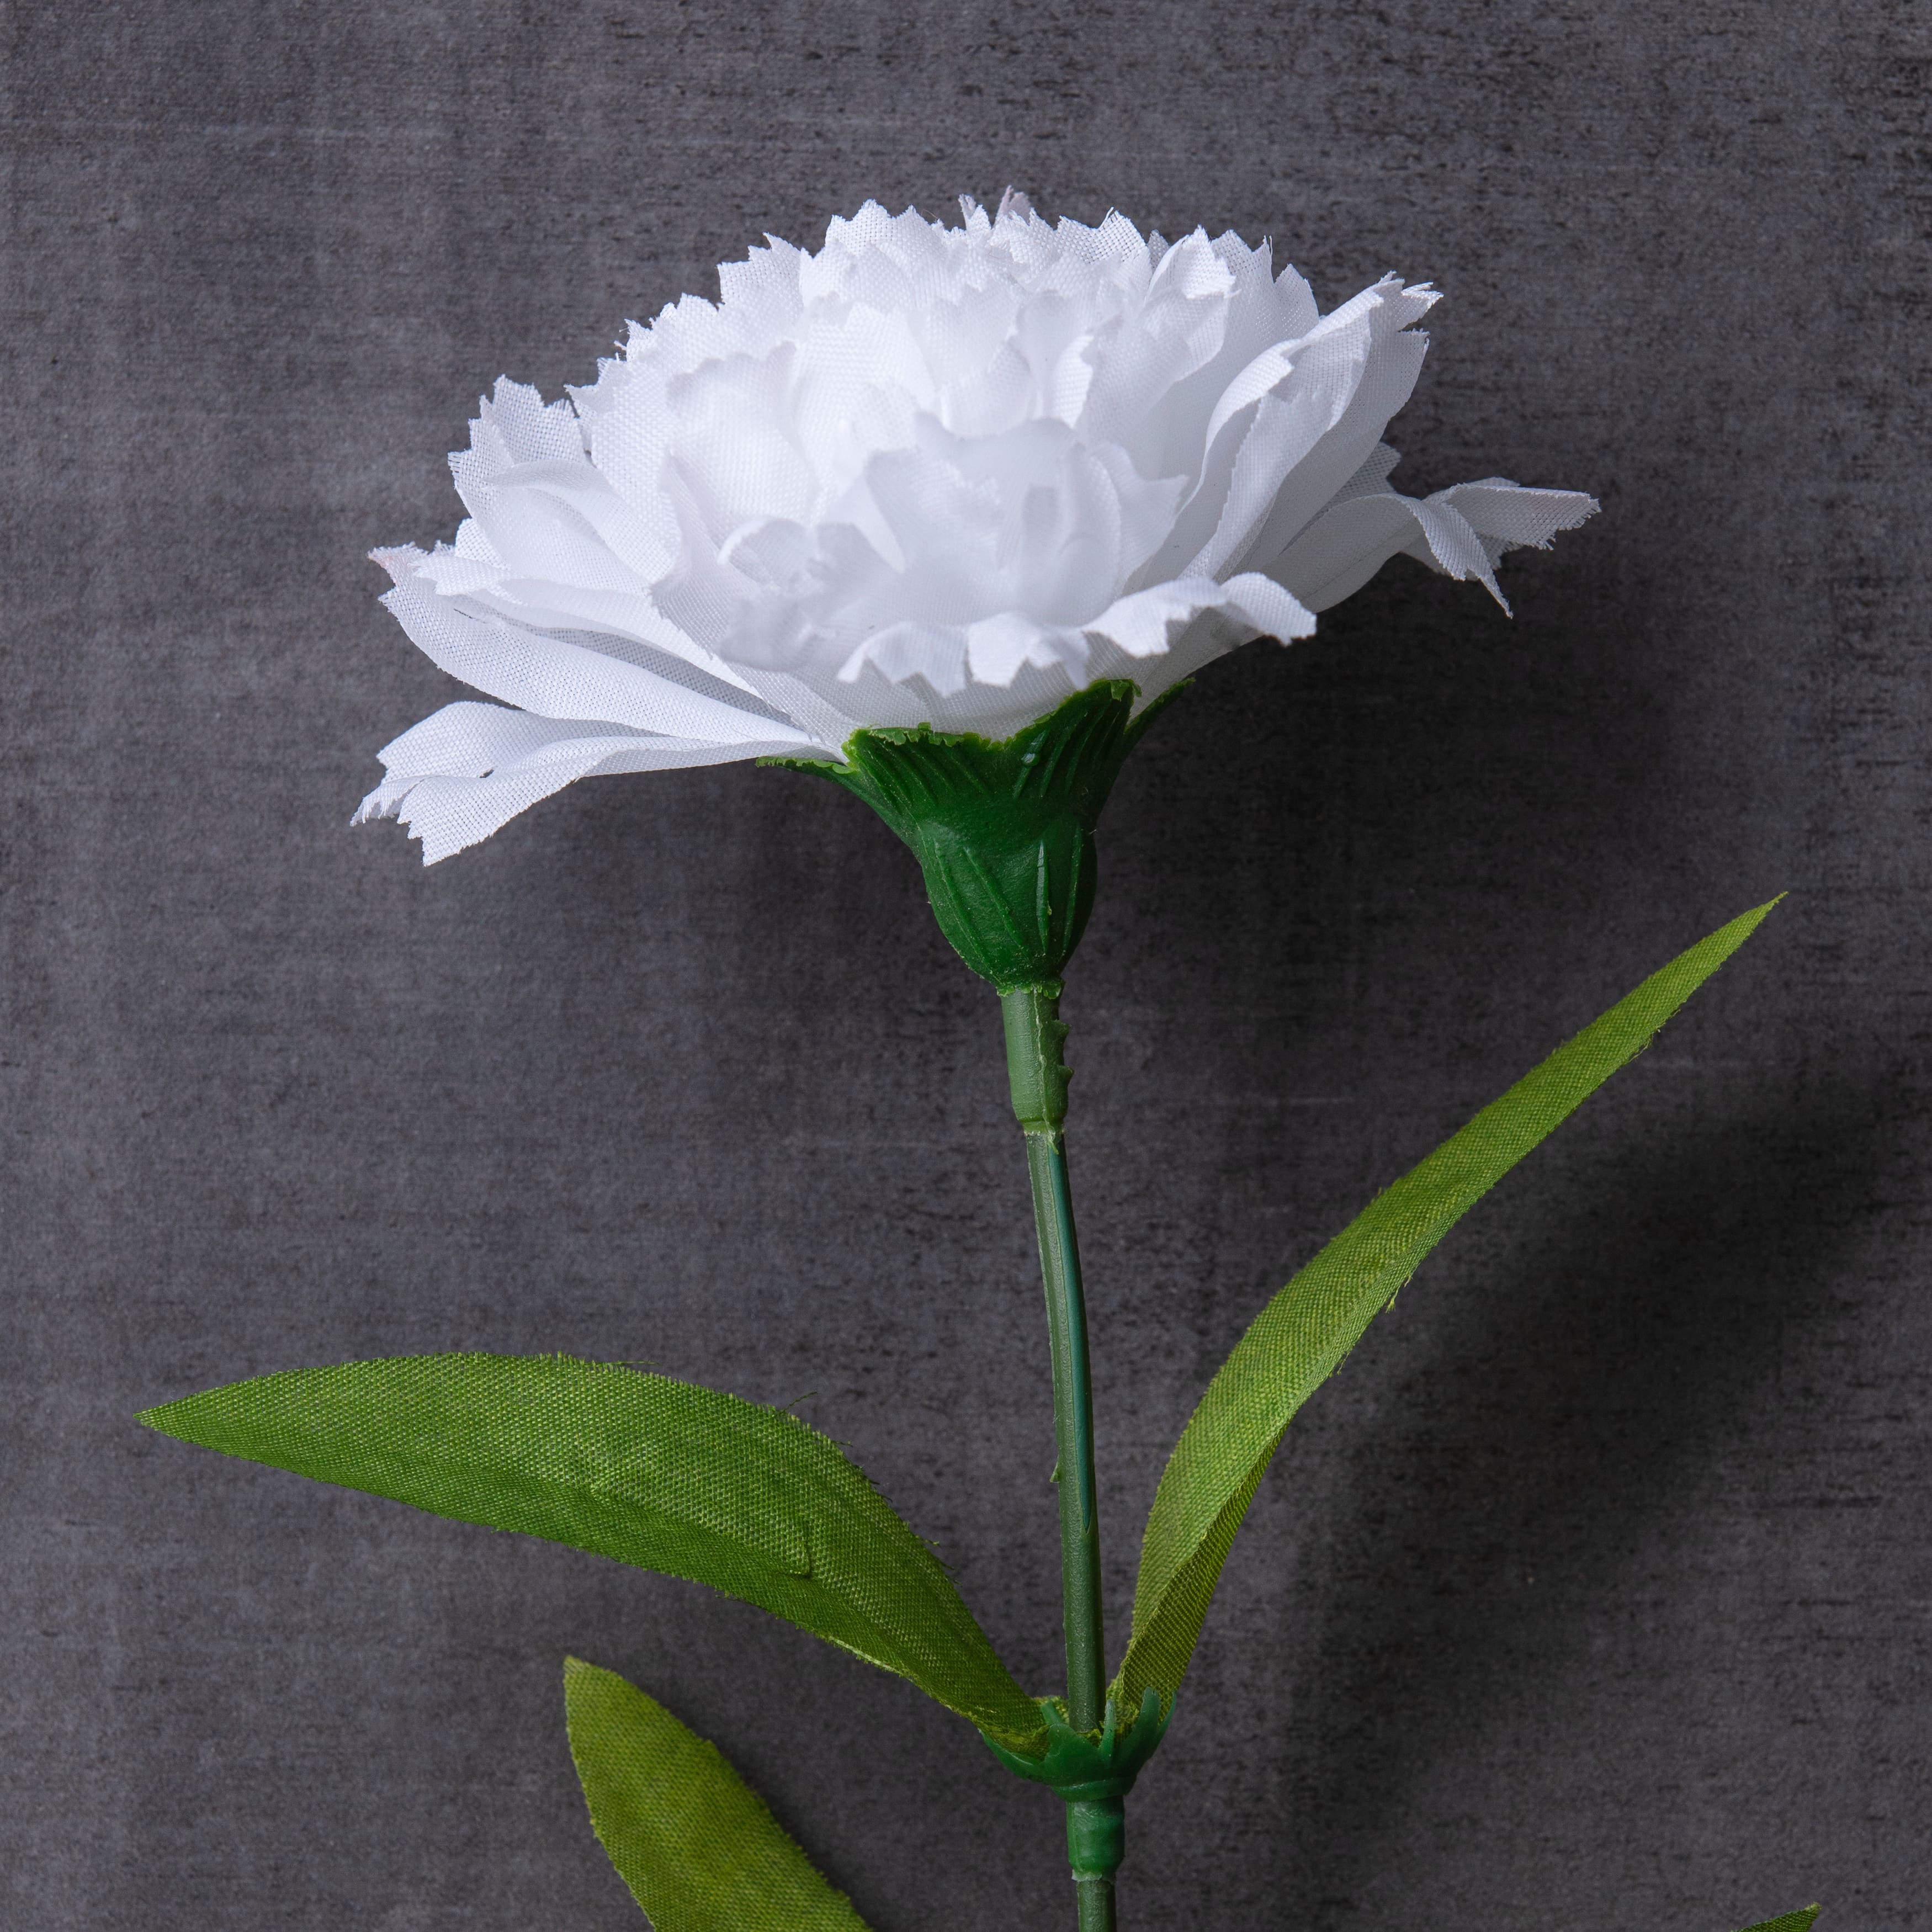 White Carnation Spray by Ashland&#xAE; 